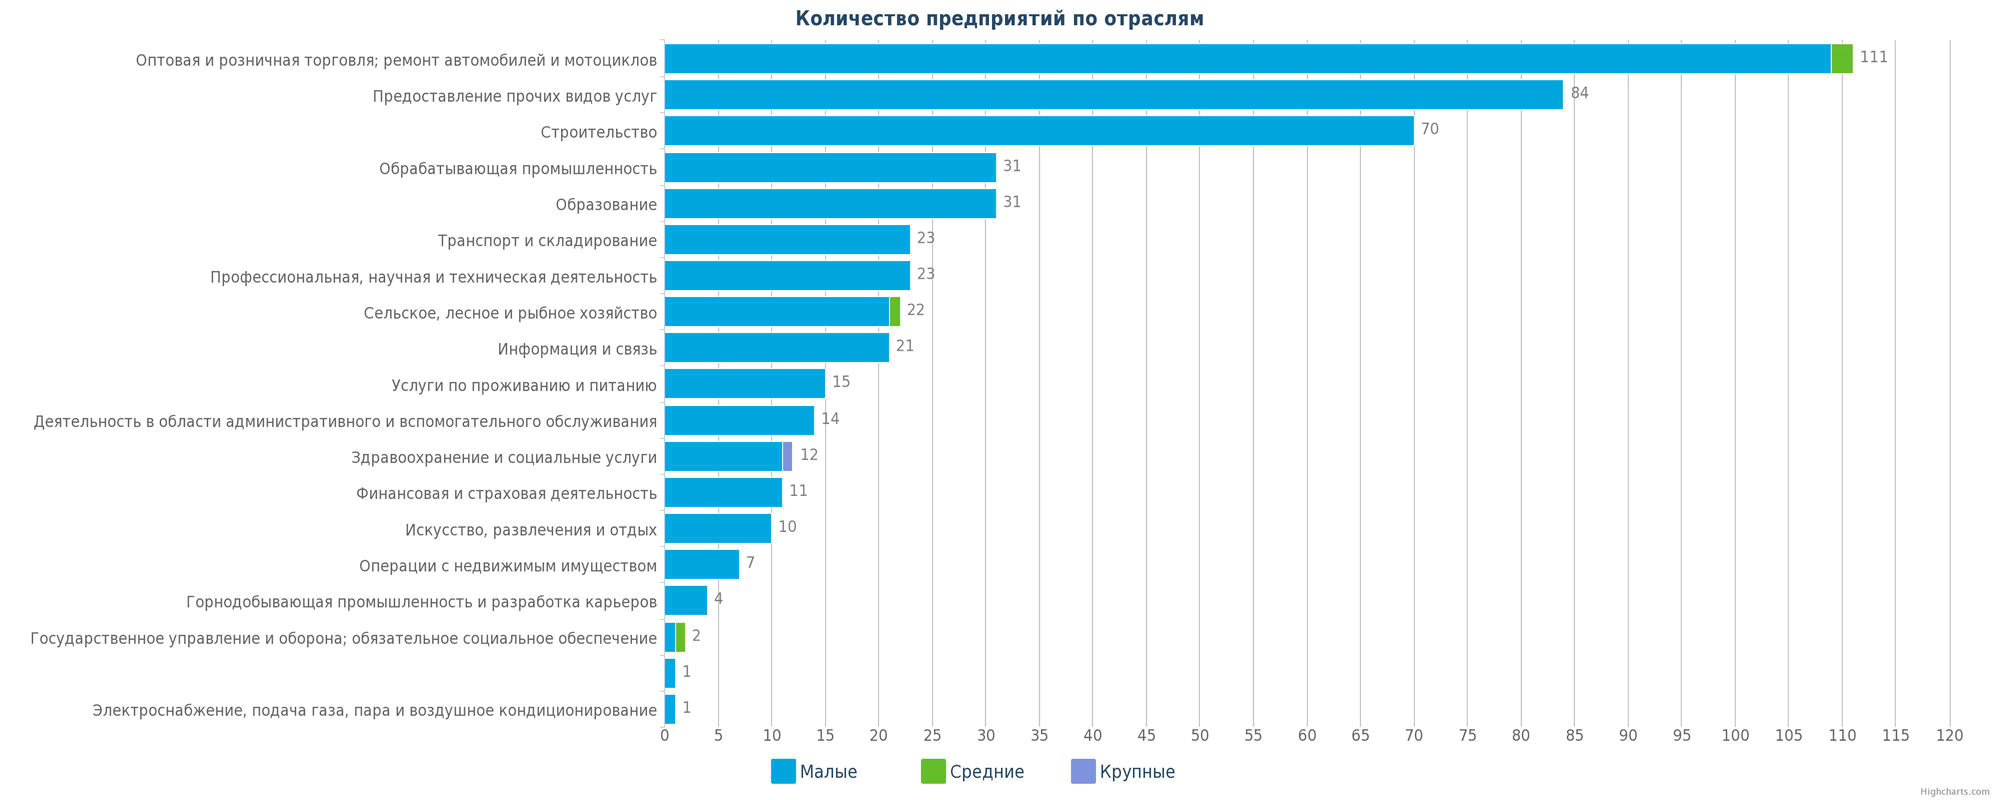 Количество новых предприятий в справочнике Казахстана по отраслям